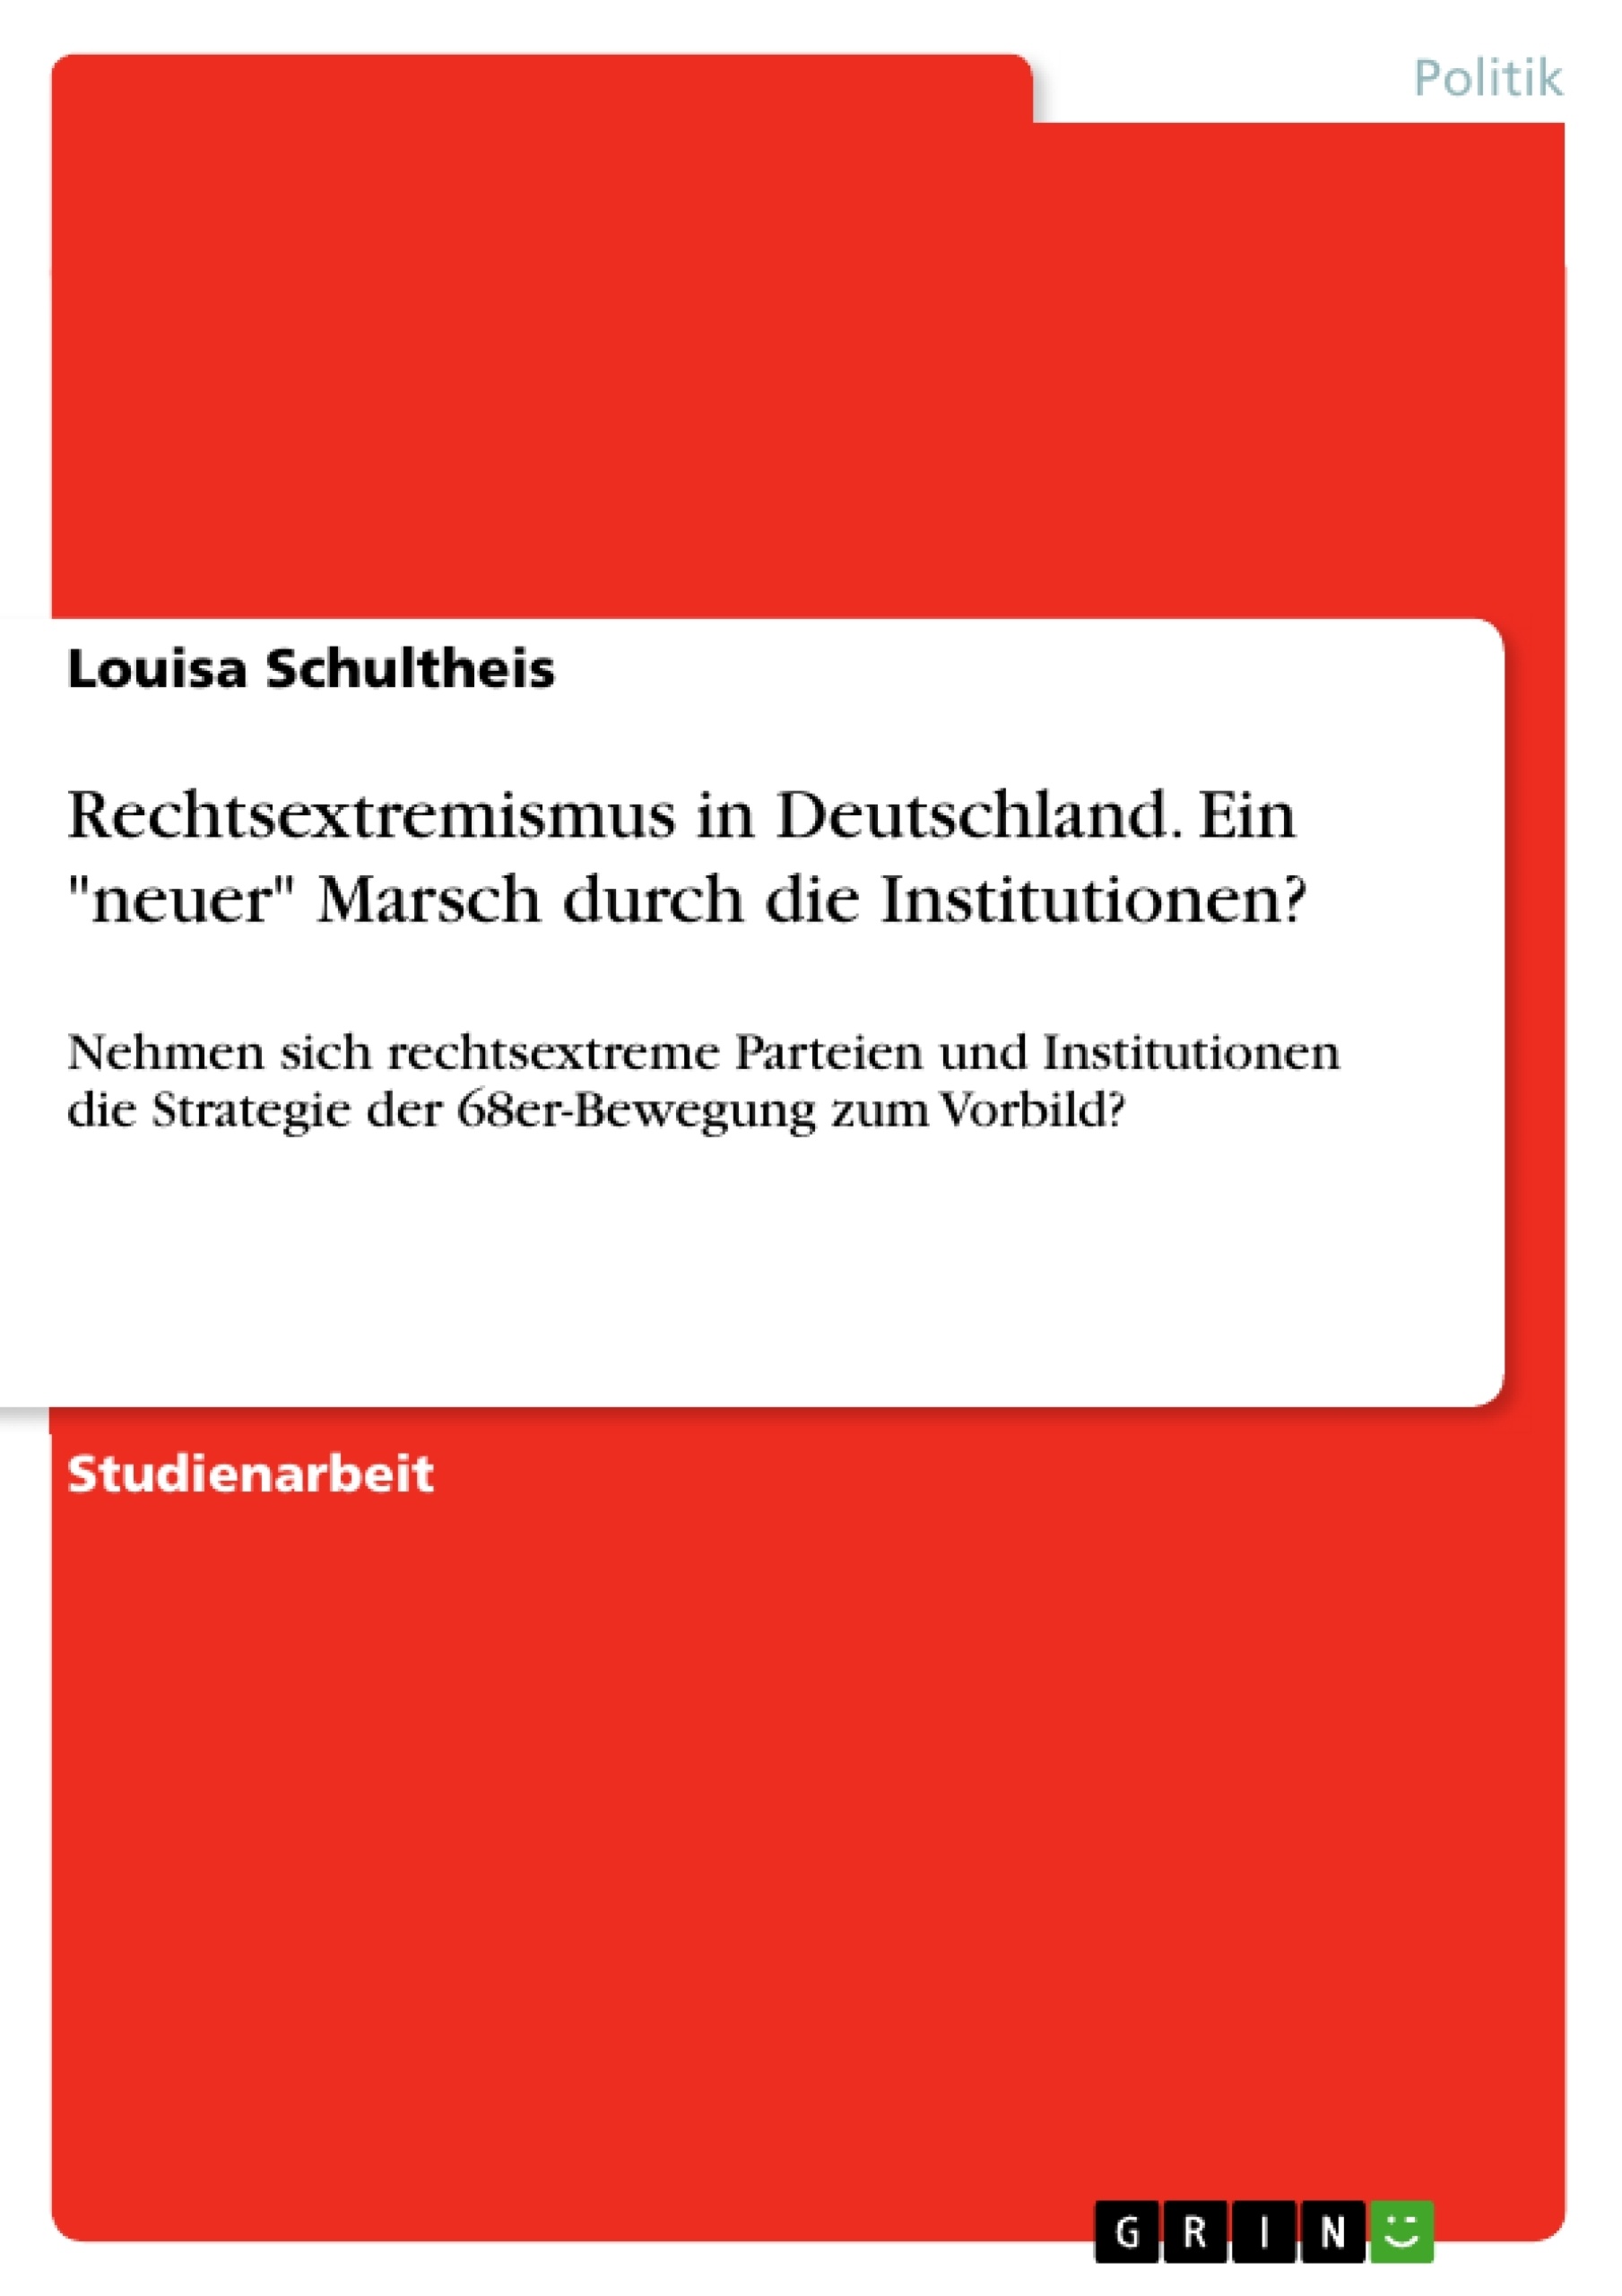 Título: Rechtsextremismus in Deutschland. Ein "neuer" Marsch durch die Institutionen?